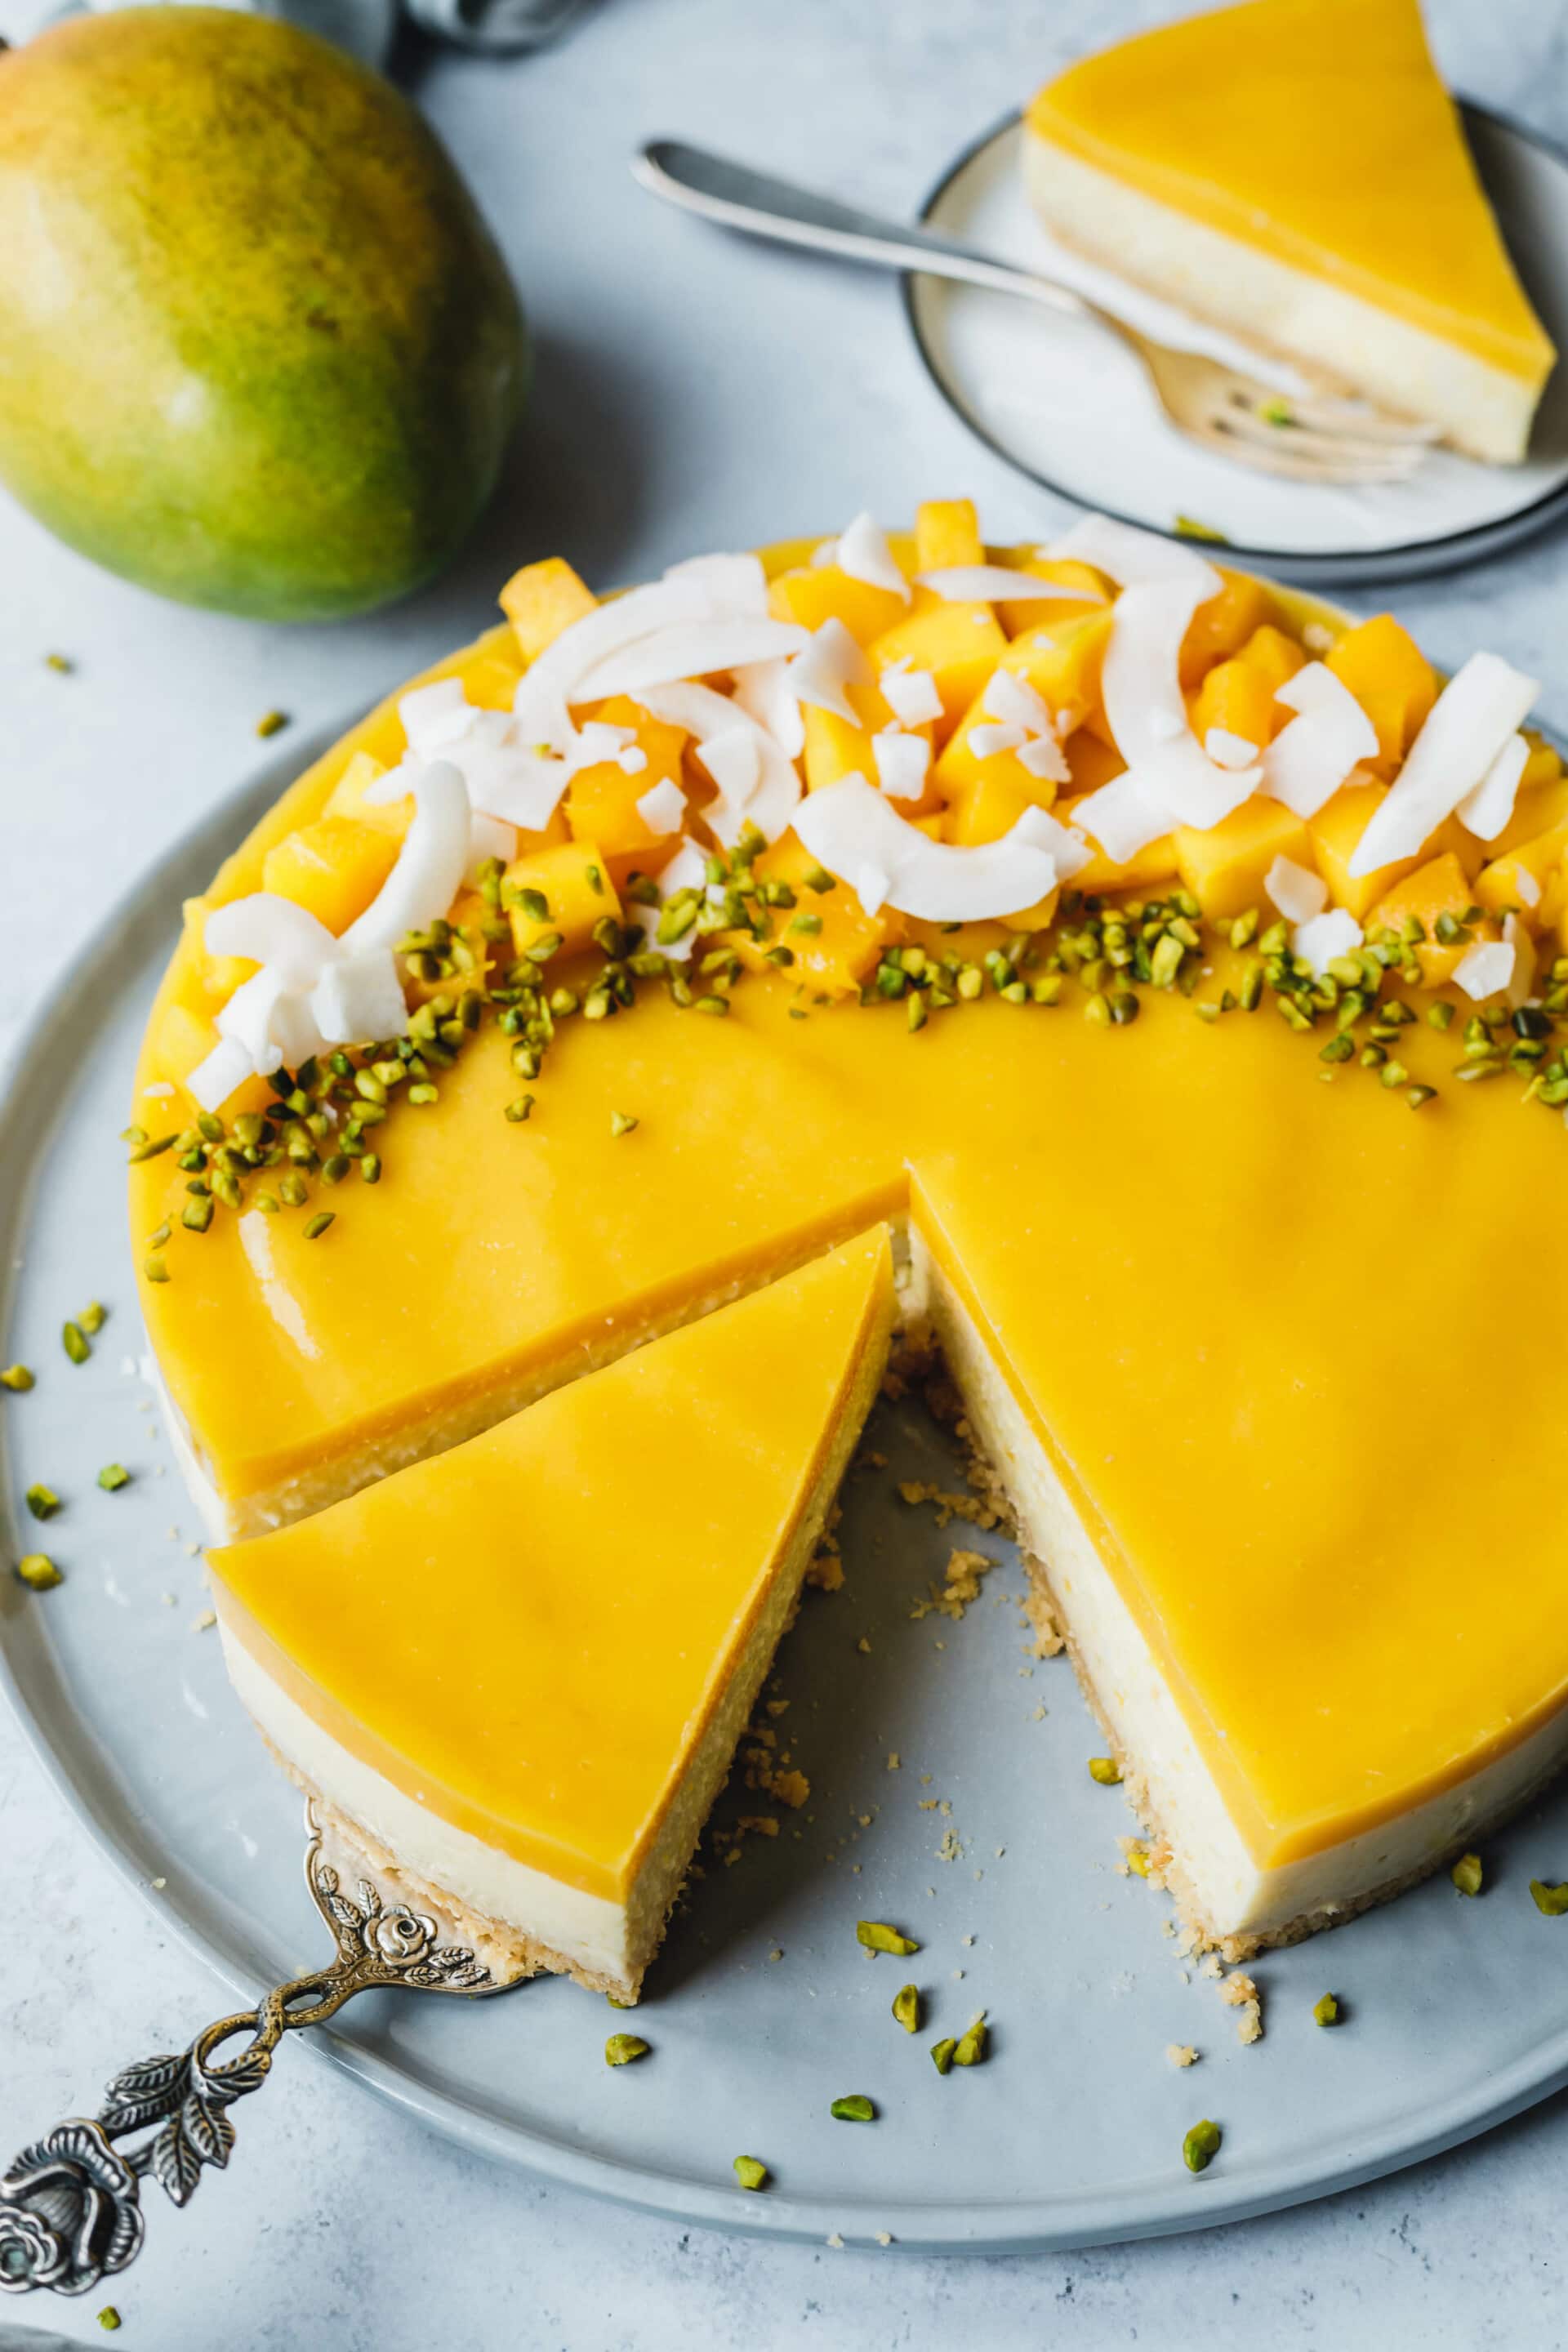 No Bake Mango Cake · Eat this! Foodblog für gesunde vegane Rezepte